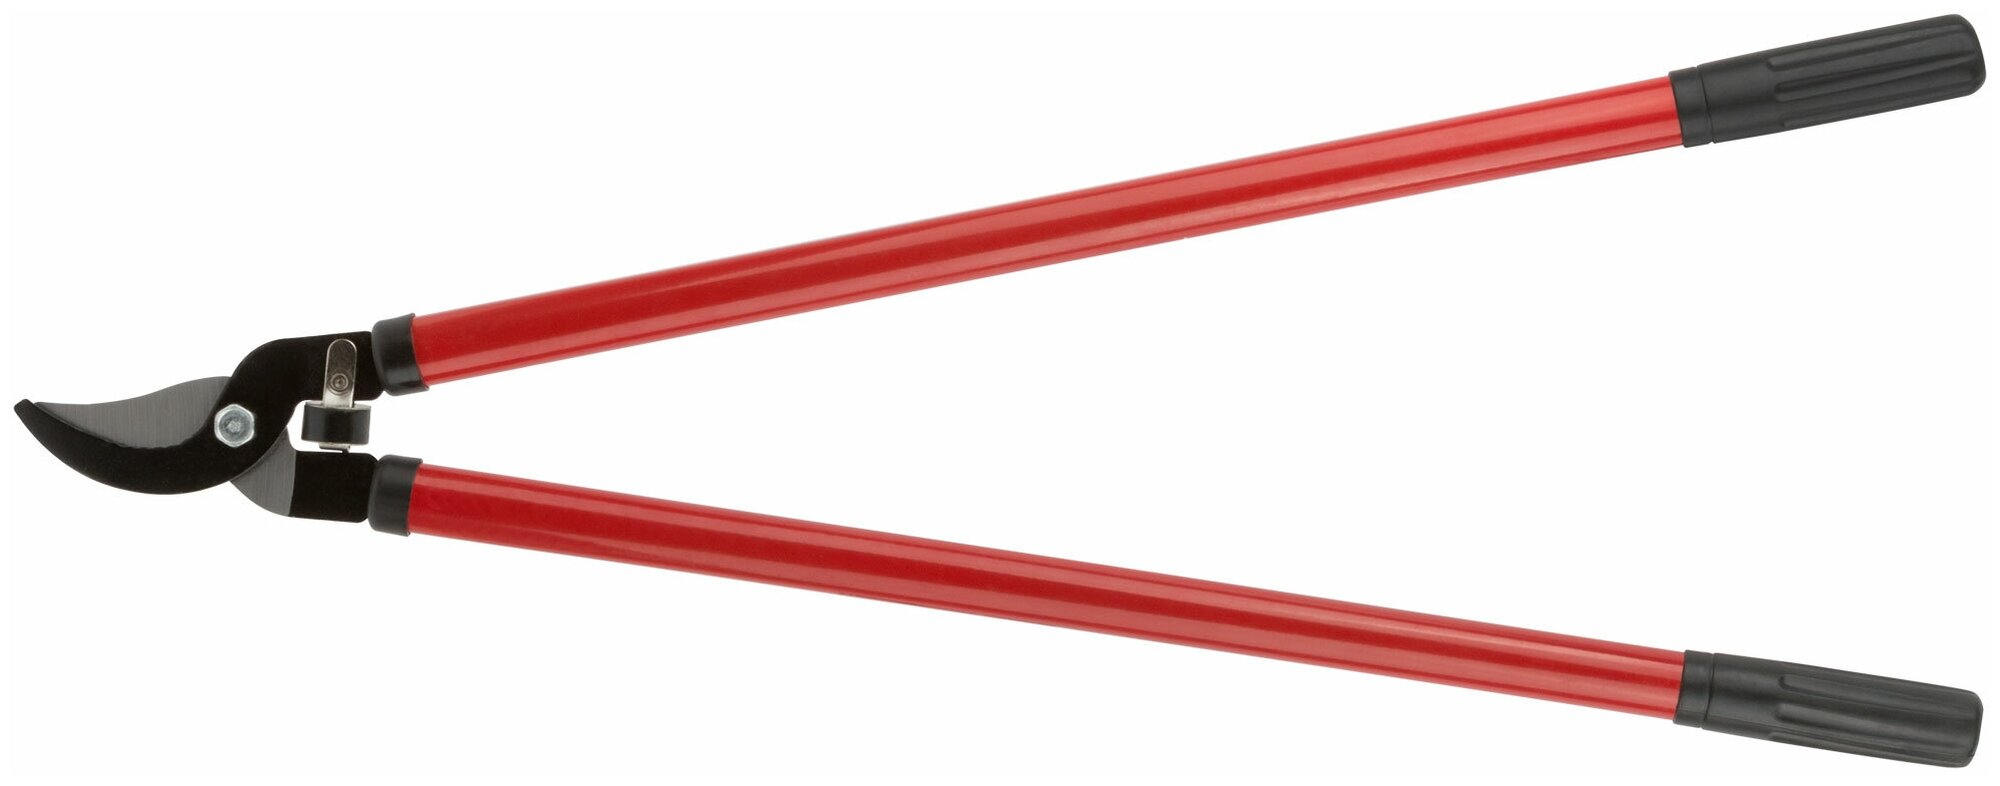 Сучкорез, лезвия 70 мм, металлические ручки с ПВХ рукоятками 700 мм 76295